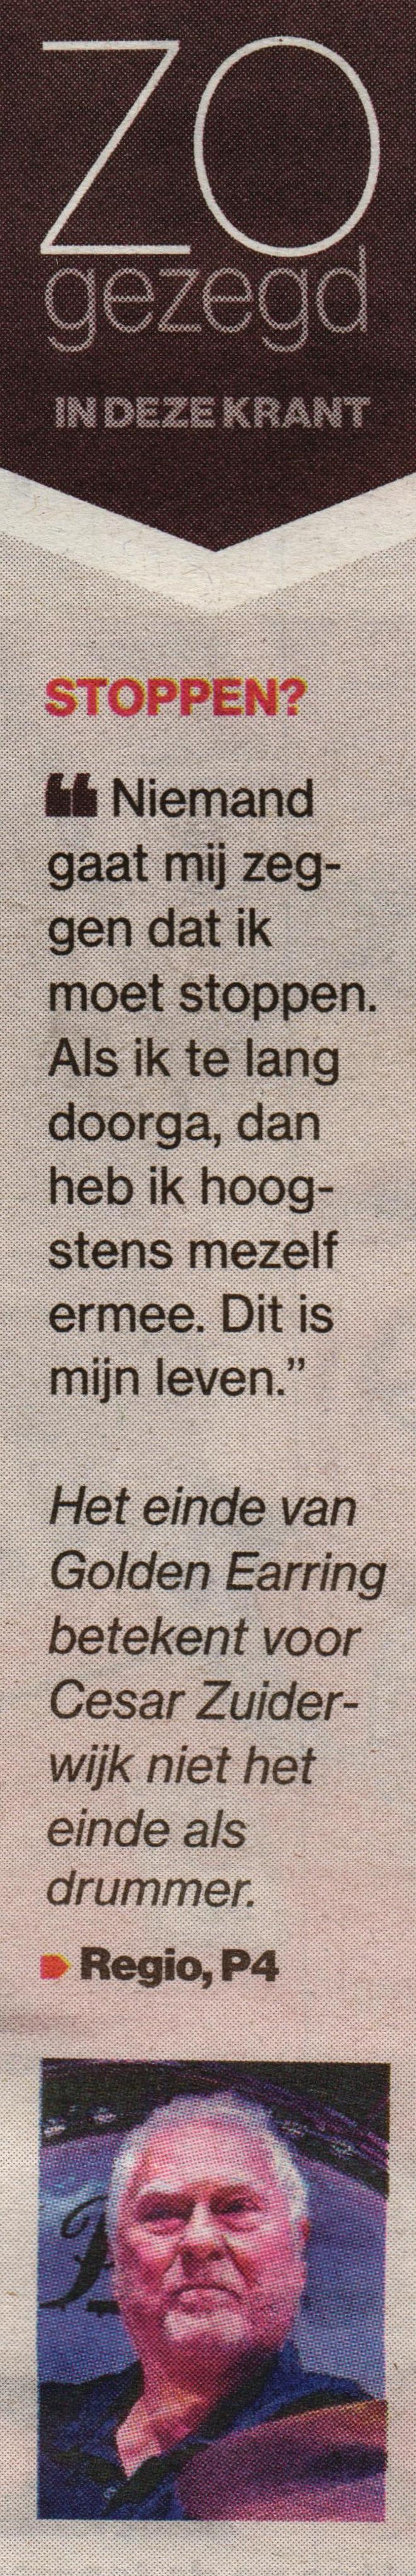 AD Newspaper article Cesar Zuiderwijk: Zo gezegd: Stoppen? August 04 2021